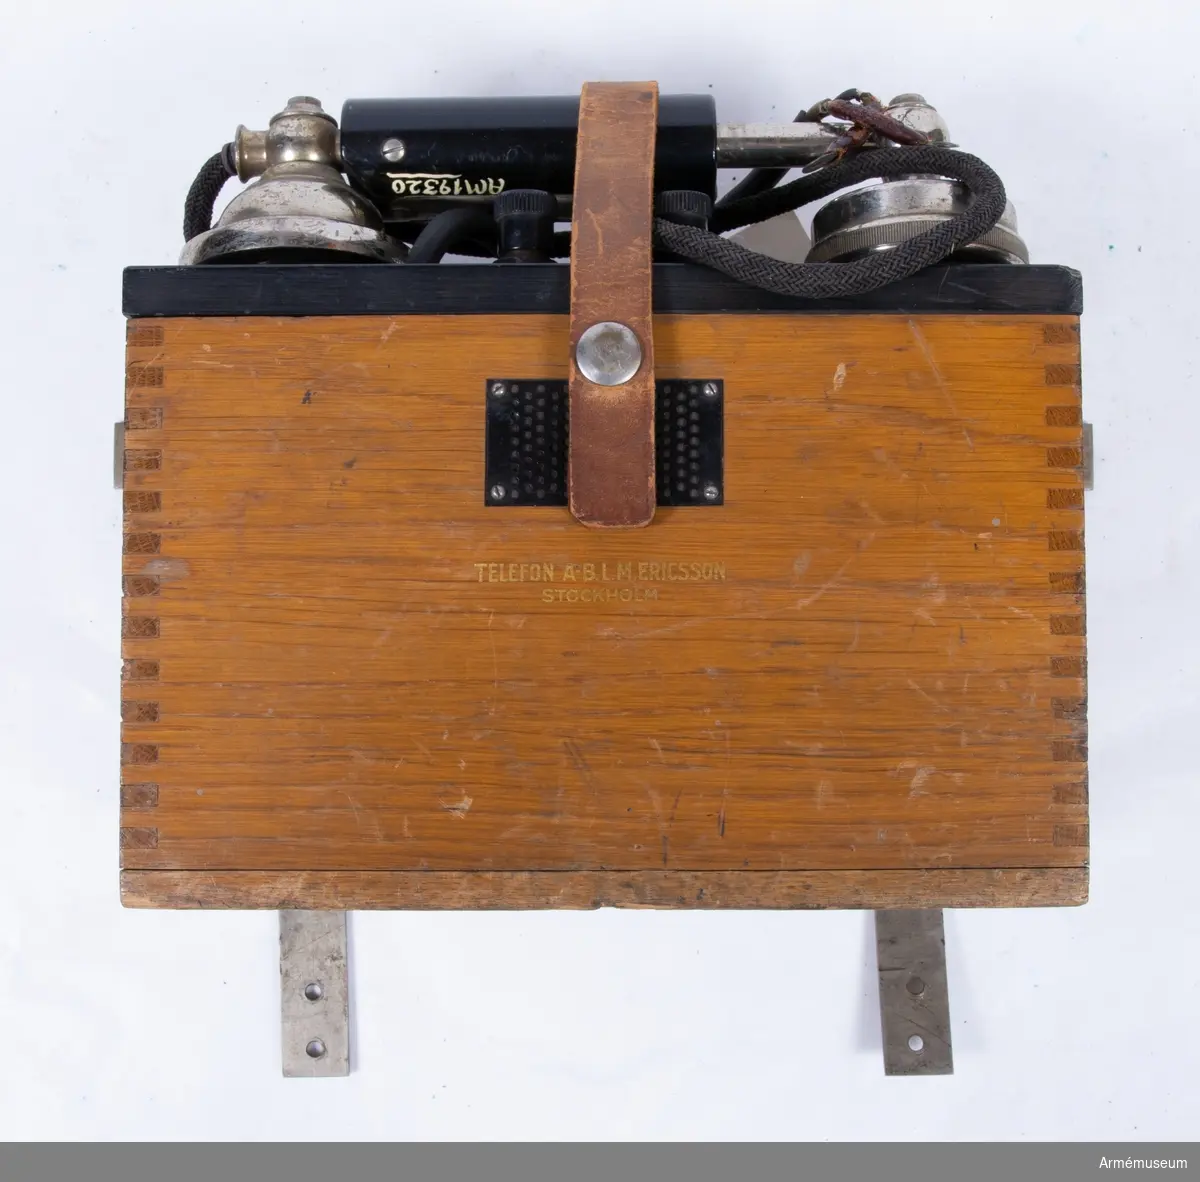 Väggtelefonapparat, 1930-tal.
Uppgifter på typ och modellår saknas. Telefonapparaten har tillhört Radiotjänsts tekniska avdelning. Märkt: Telefon A-B.L.M. Ericsson Stockholm. Induktorvev och batteri saknas.